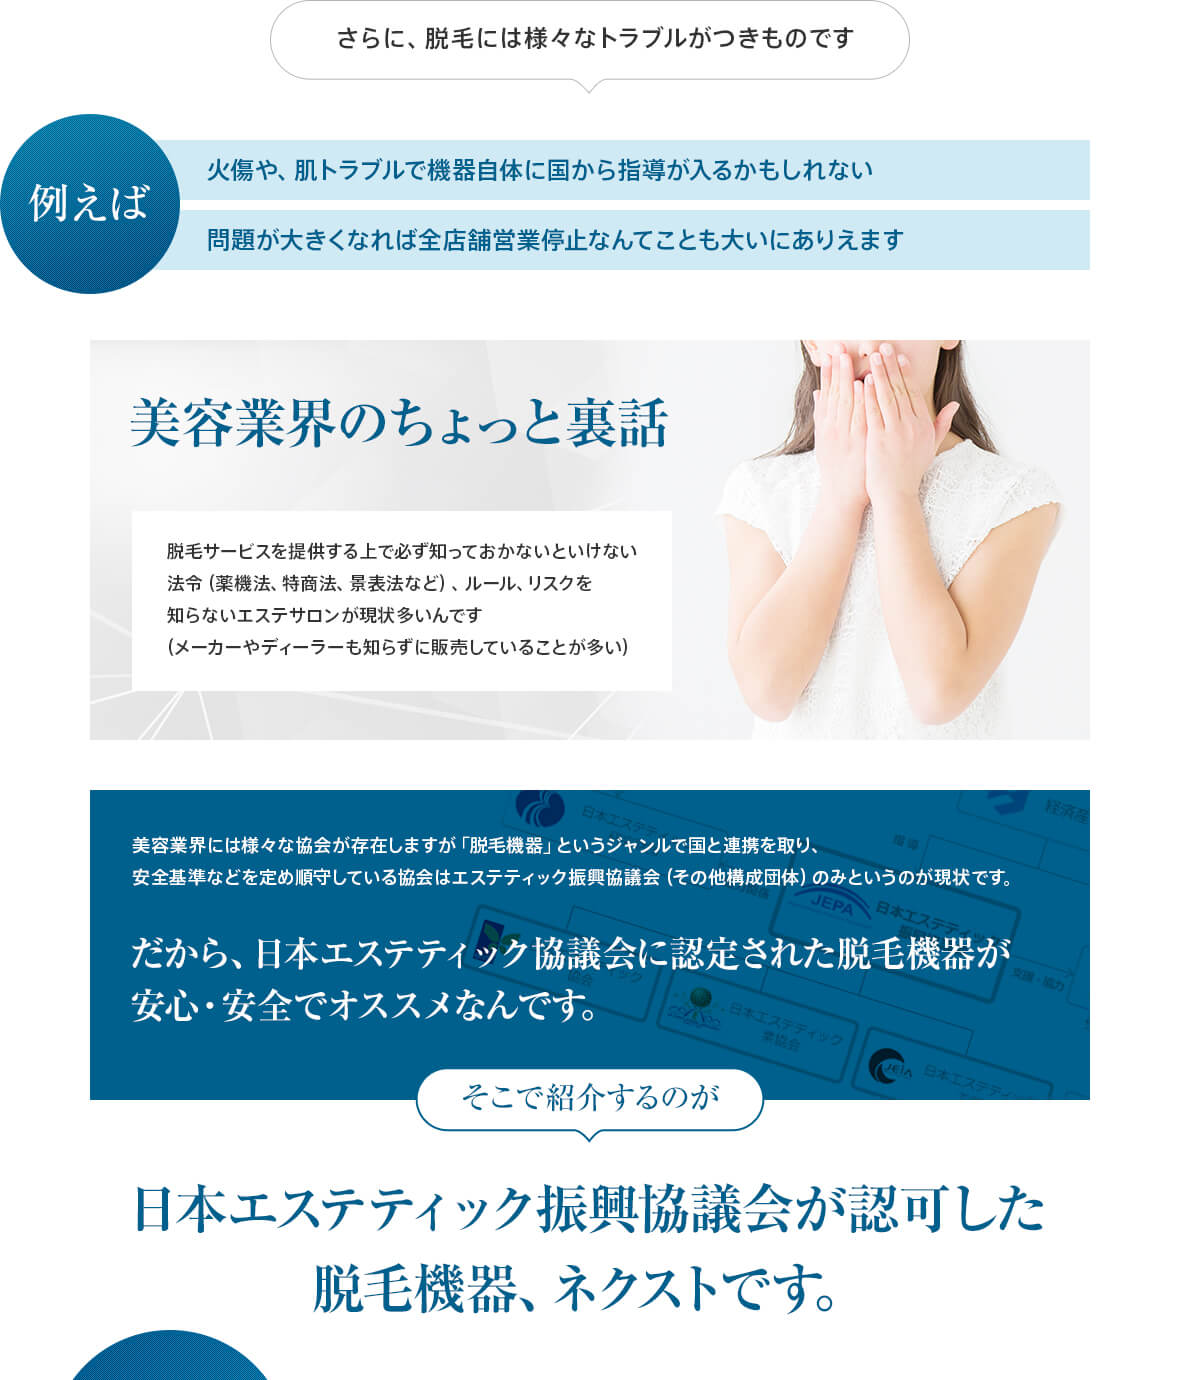 そこで紹介するのが日本エステティック振興協議会が認可した脱毛機器、ネクストです。